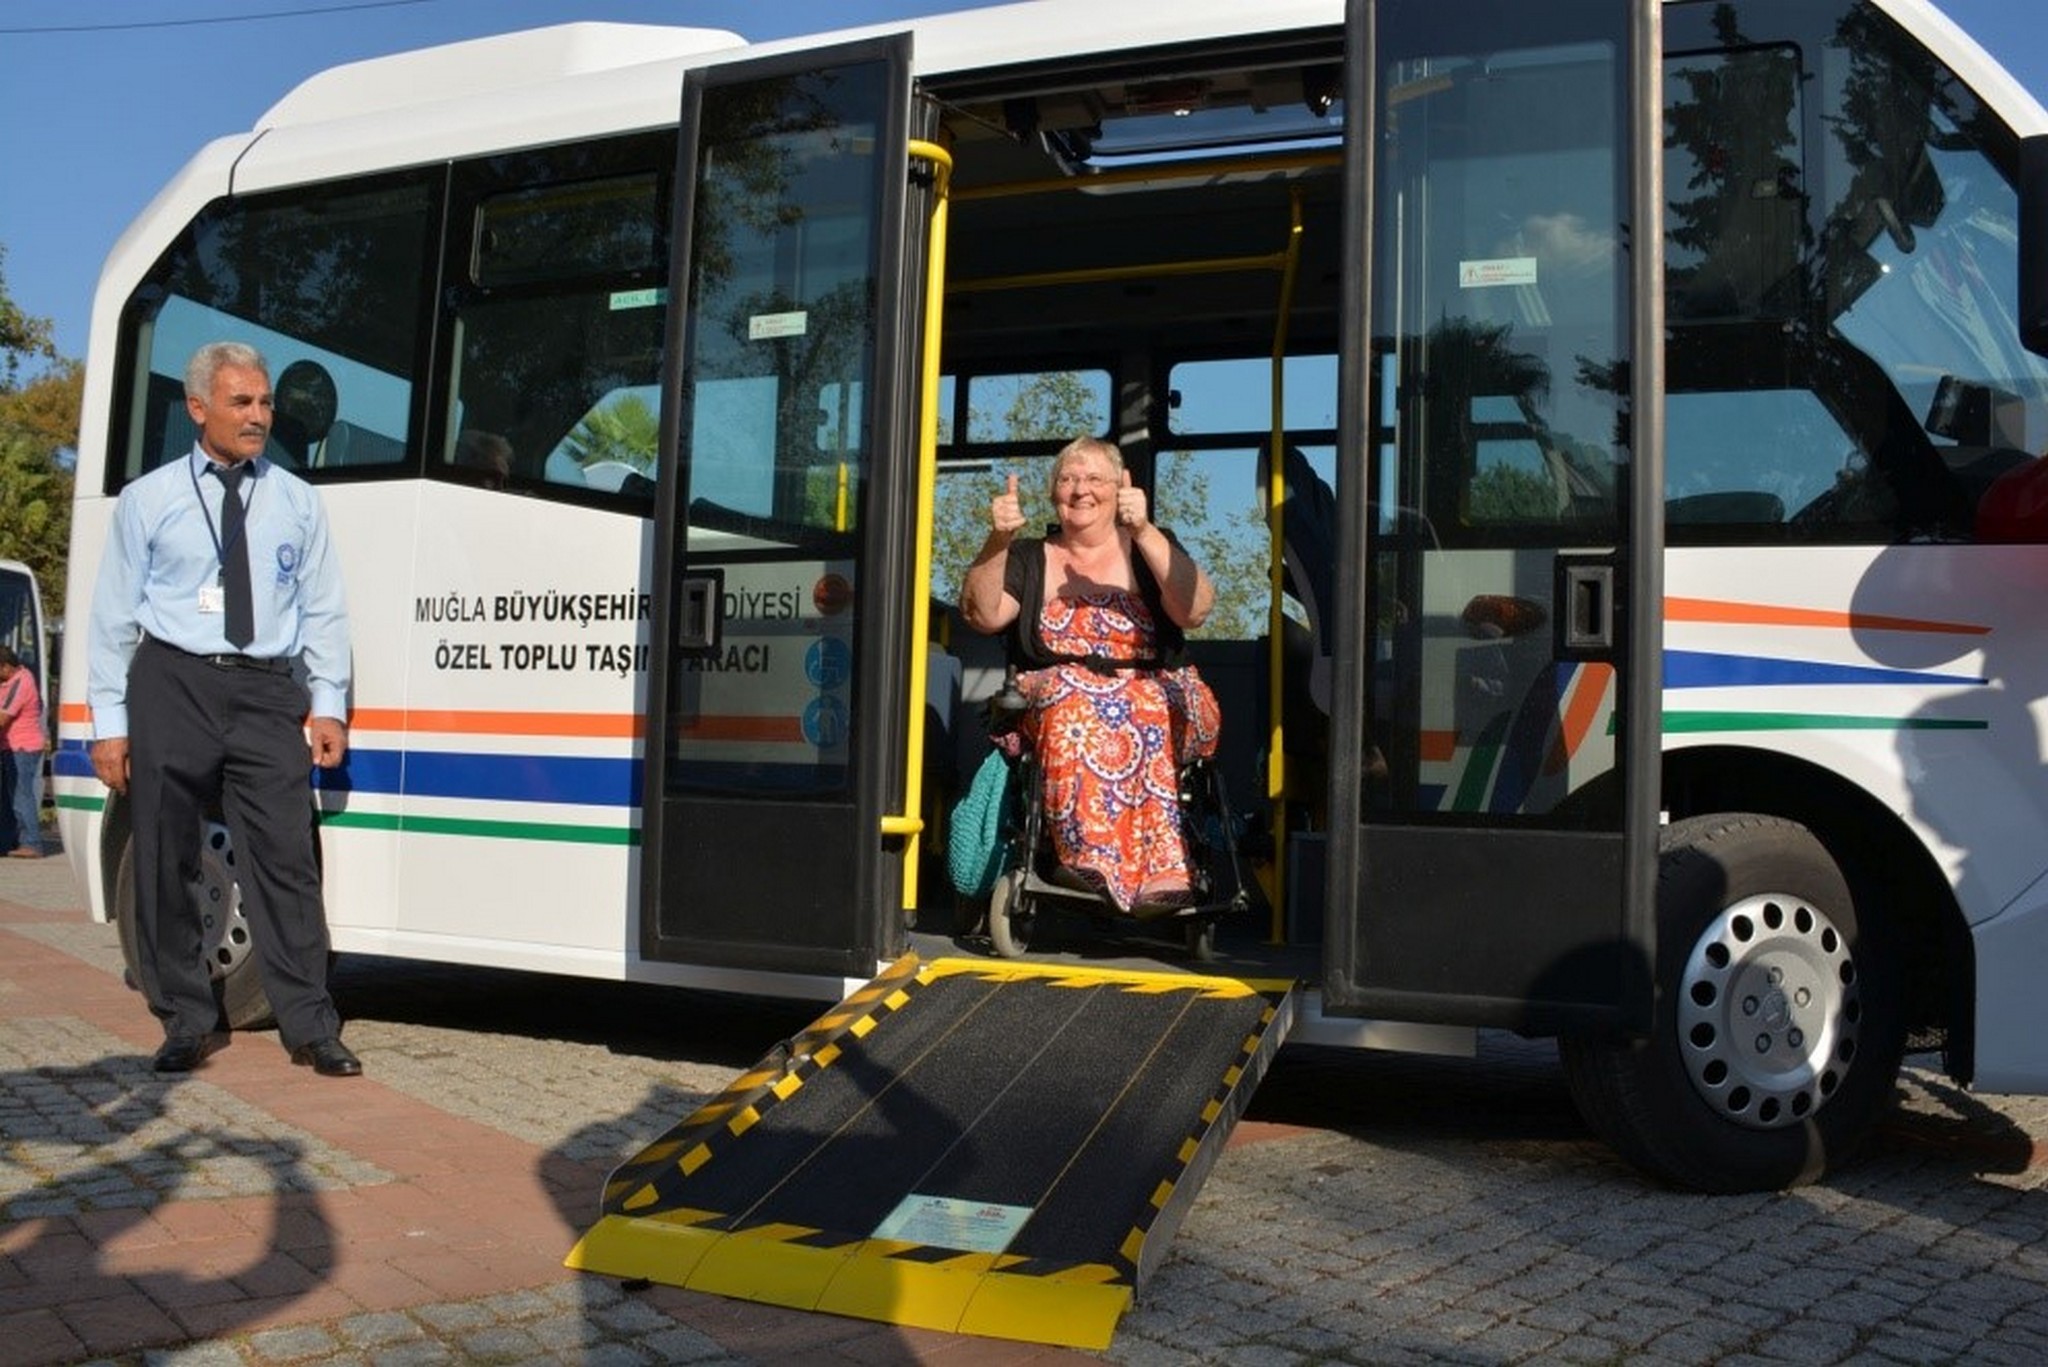 Muğla Büyükşehir Belediyesi, 32 milyon yolcuya hizmet verdi